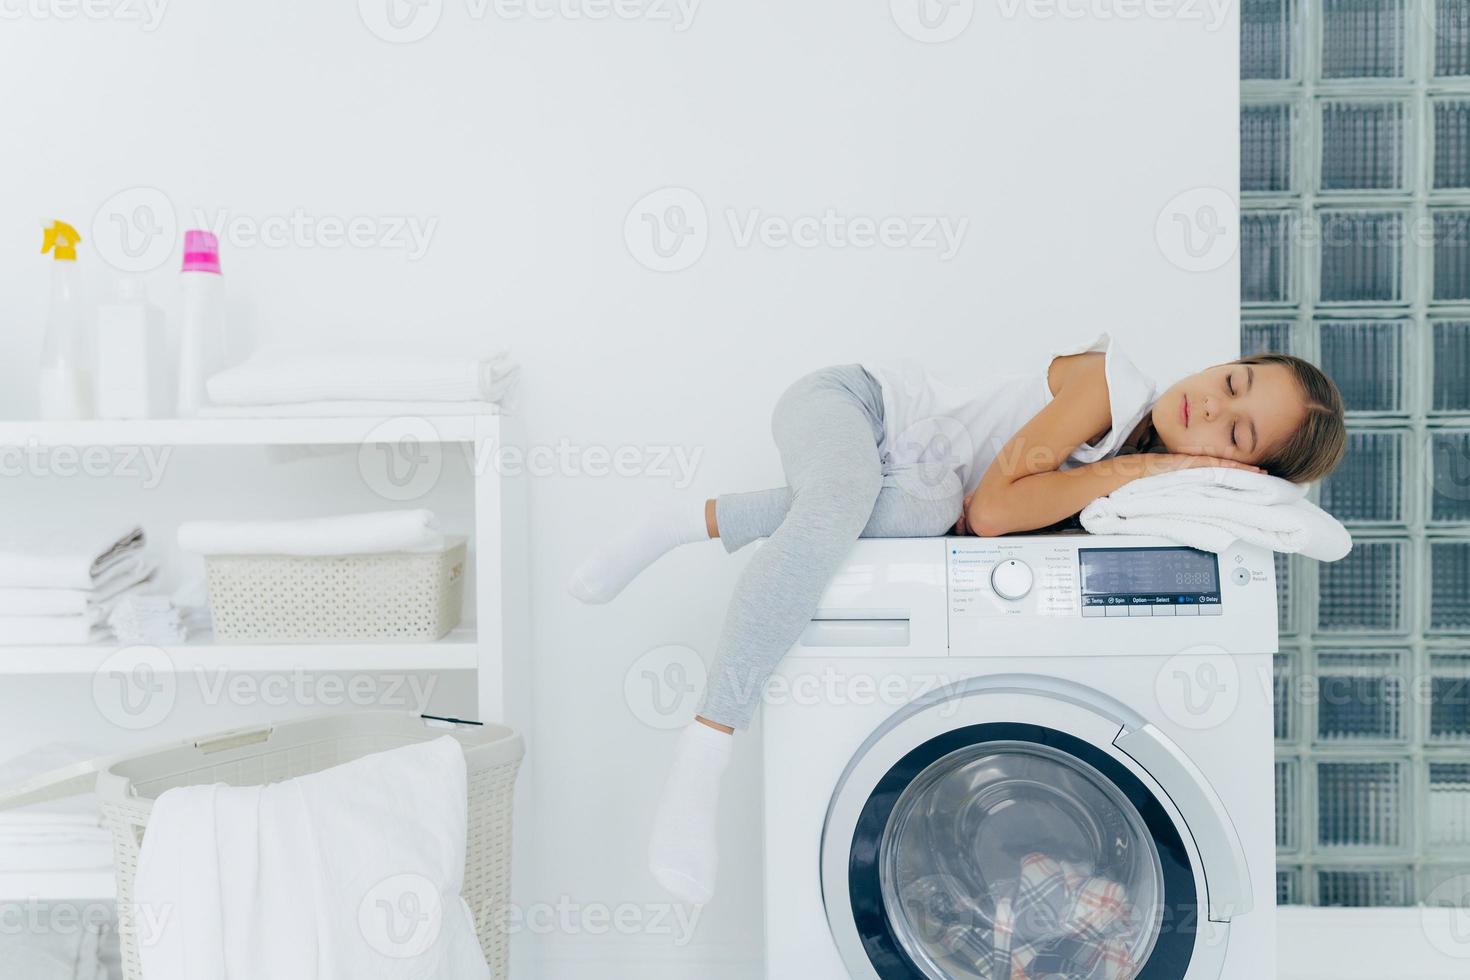 horisontell bild av liten flicka har vilat på tvättmaskinen, känner sig trött efter att ha hjälpt mamma i huset, sover på tvättmaskinen poserar i tvättstugan med konsol, tvättmedel, linne runt. hushållsrutin foto